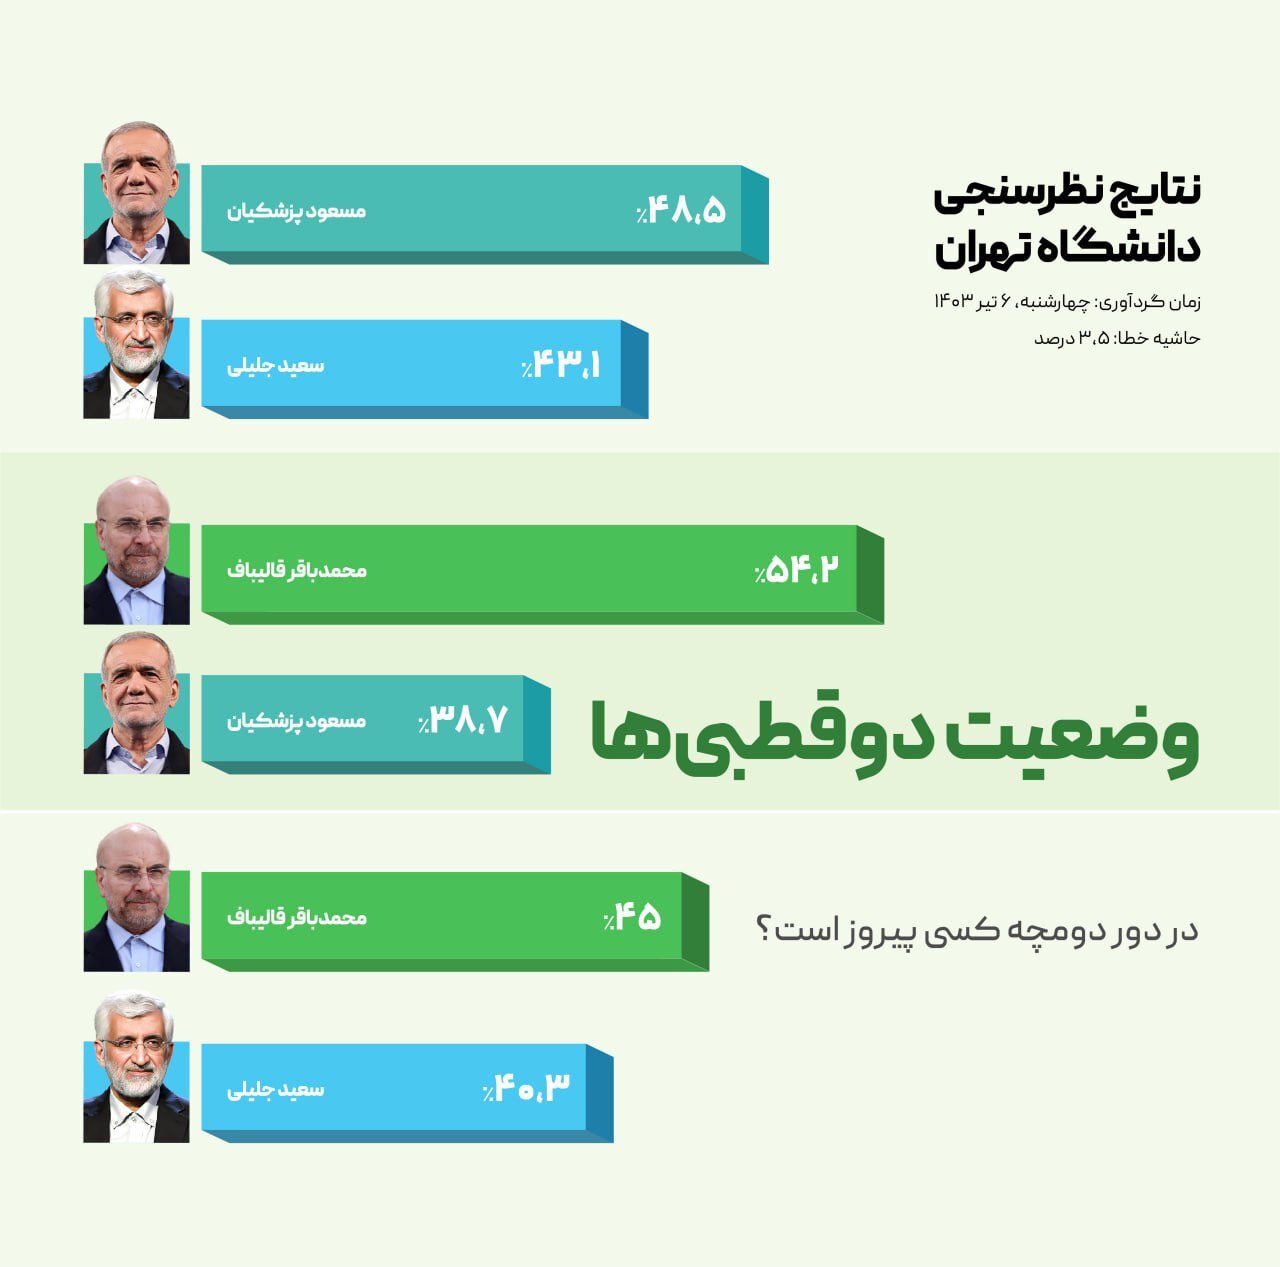 سبد رای نامزد‌ها بر اساس نظرسنجی دانشگاه تهران